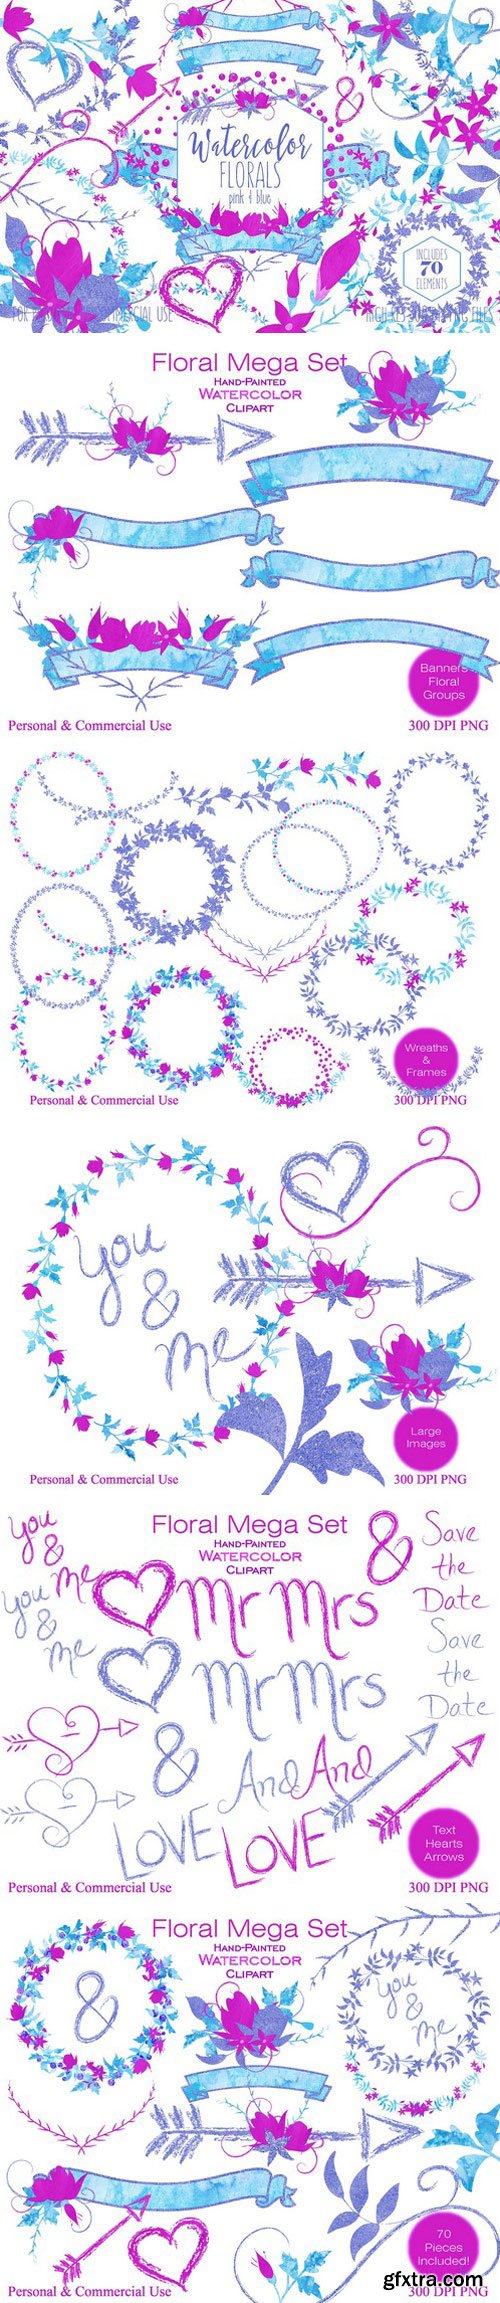 CM - Pink & Blue Watercolor Floral Set 2176158